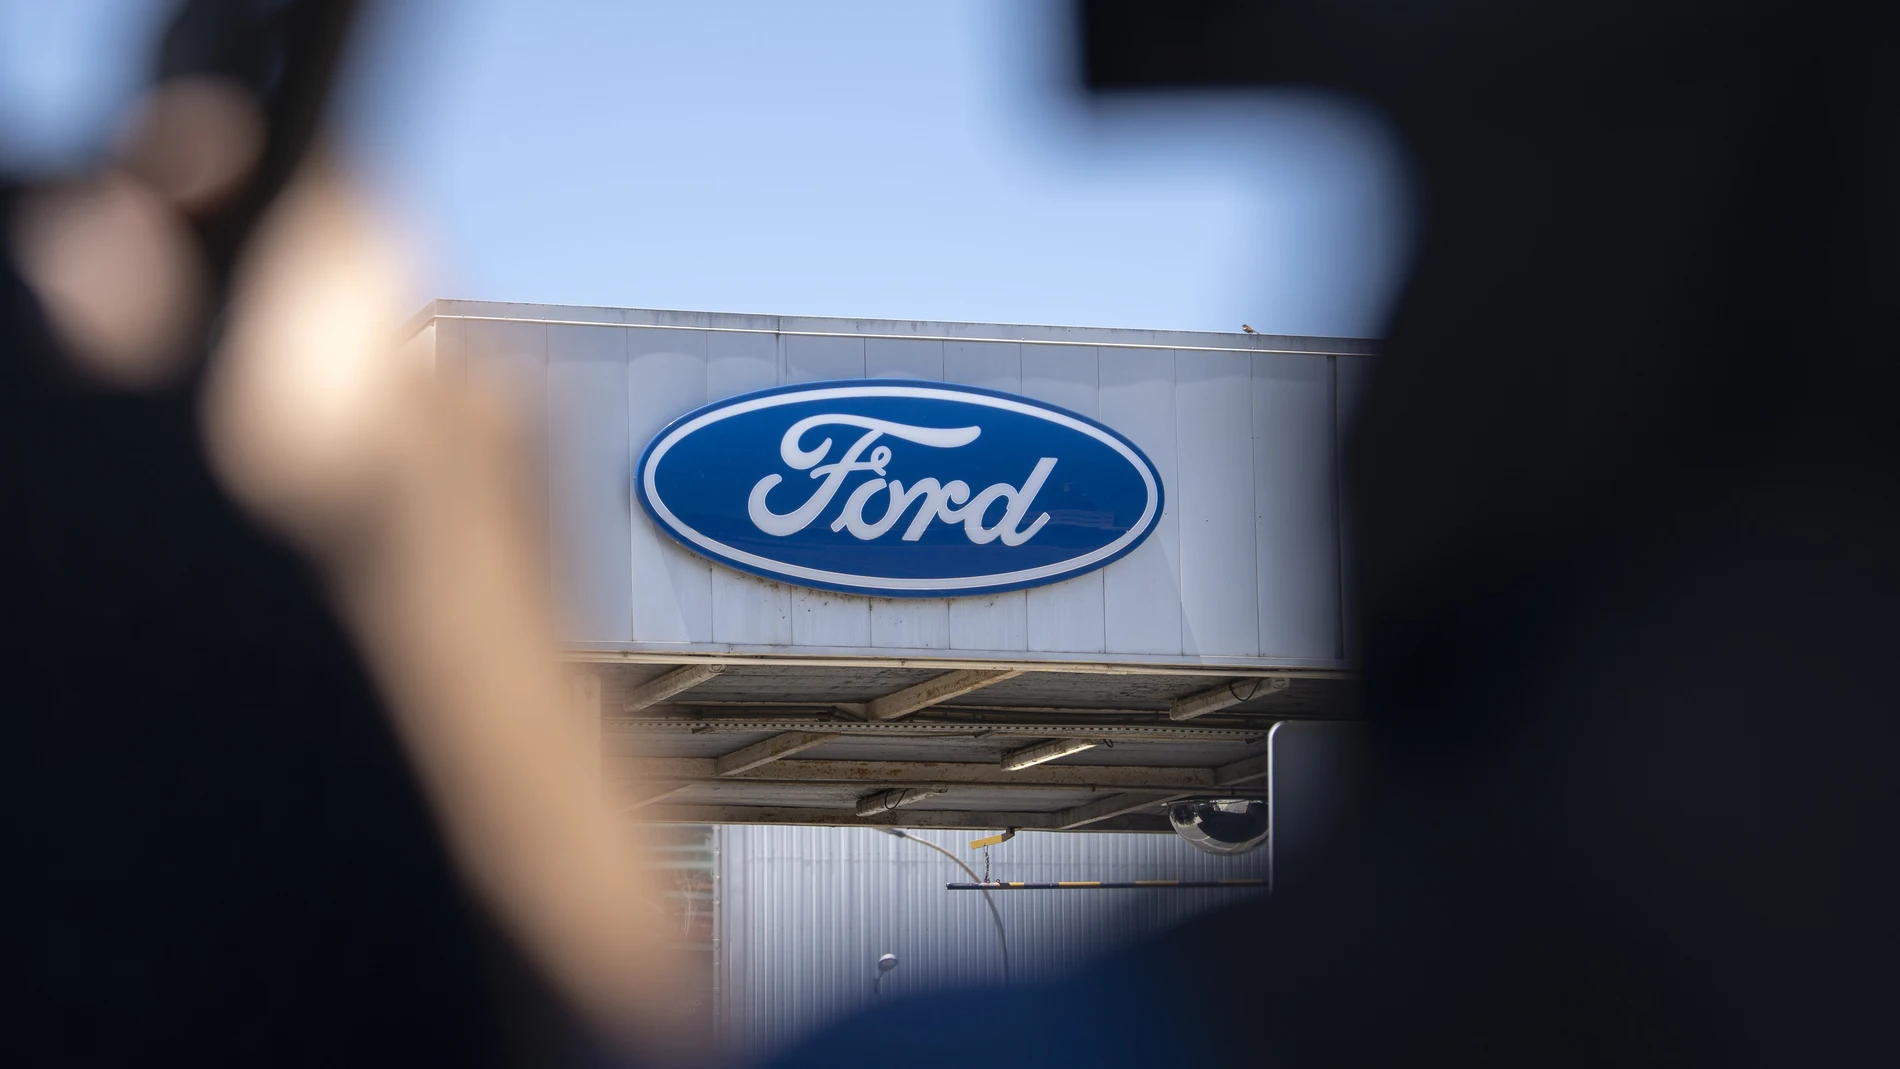 Economía/Motor.- Ford Almussafes ve con "preocupación" los despidos en Europa y espera empezar a negociar en primavera